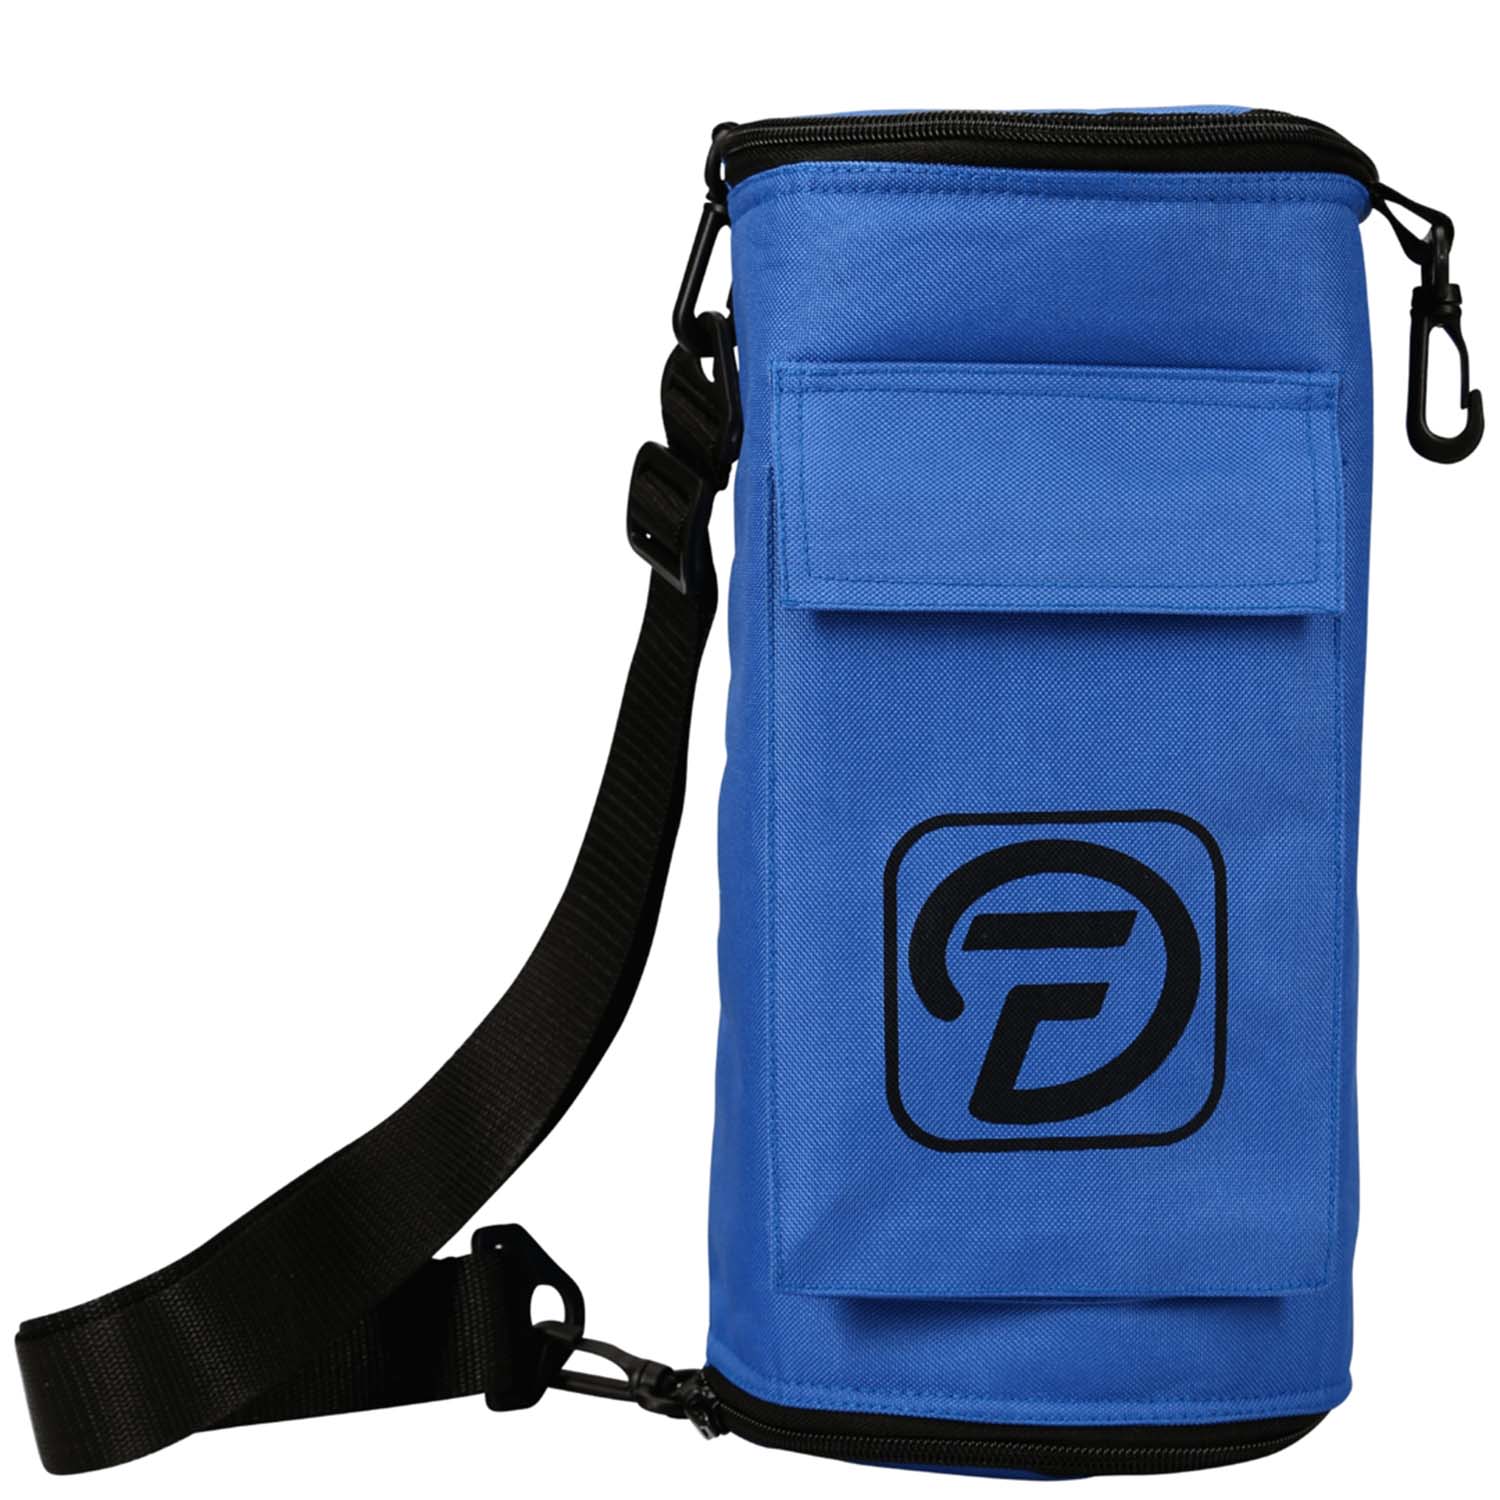 Diabolo Freizeitsport Tasche in blau für Jonglagezubehör kaufen!